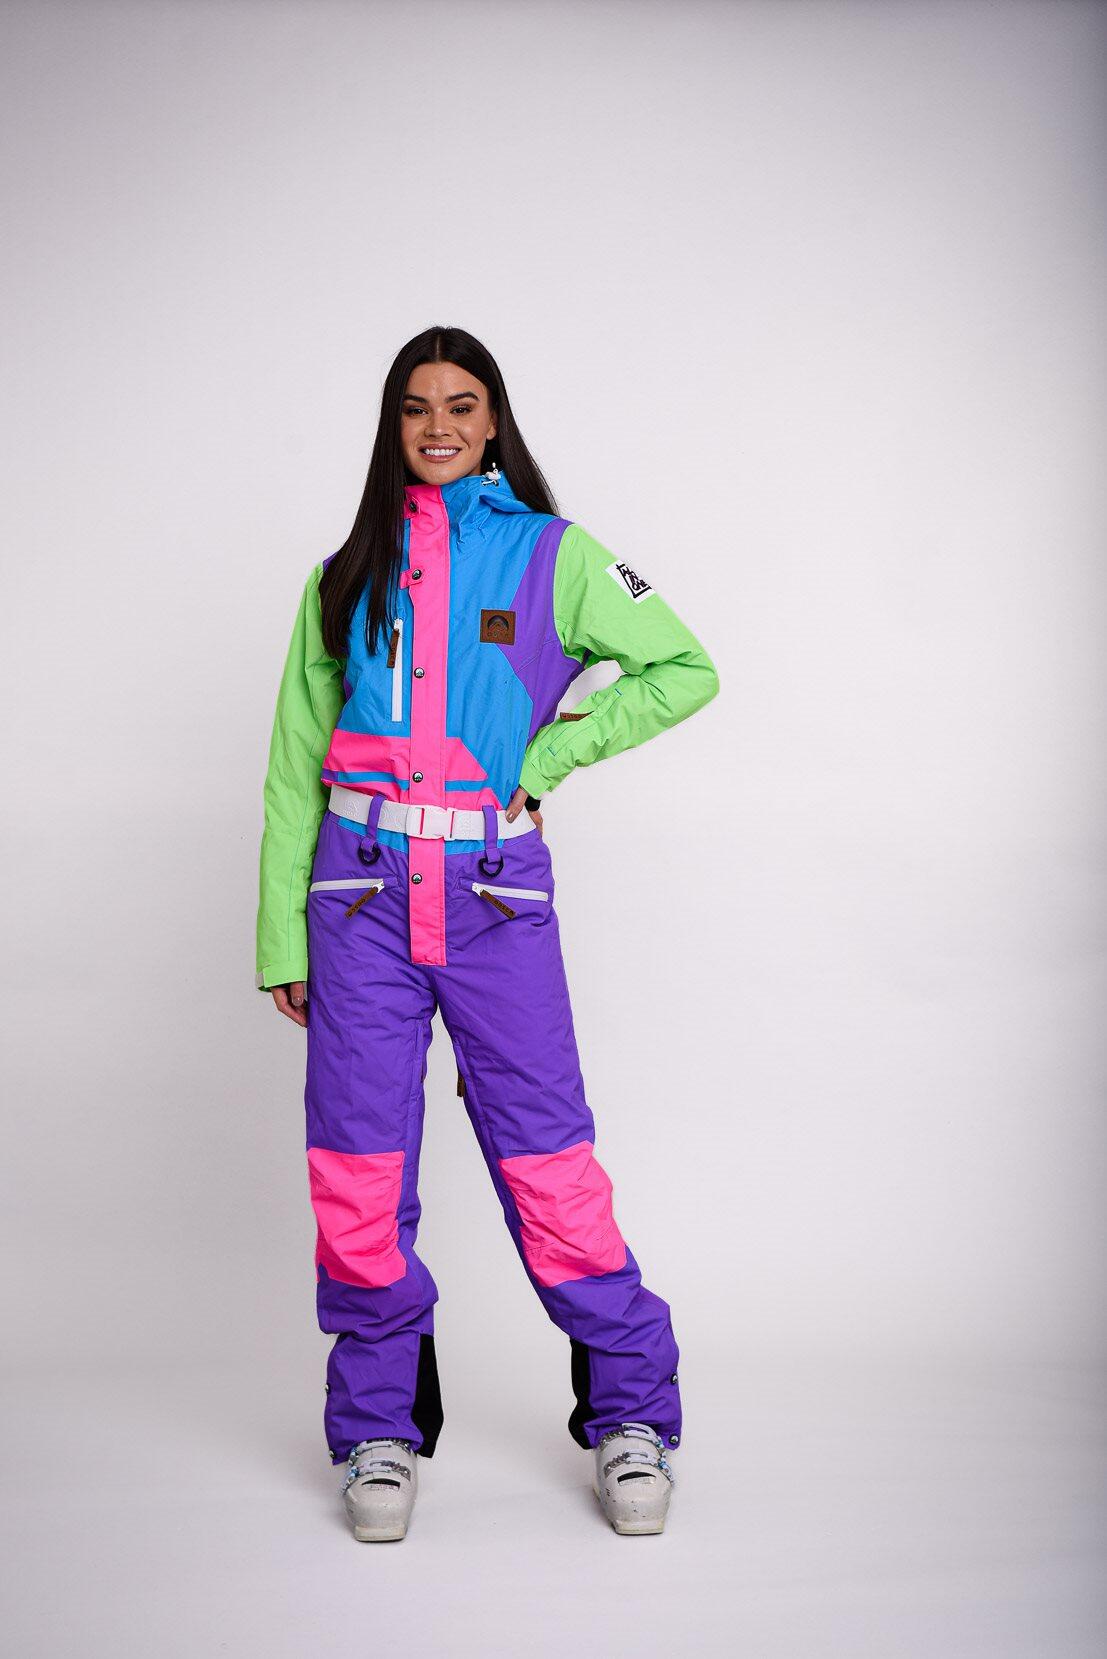 OOSC Powder Hound Ski Suit - Women's